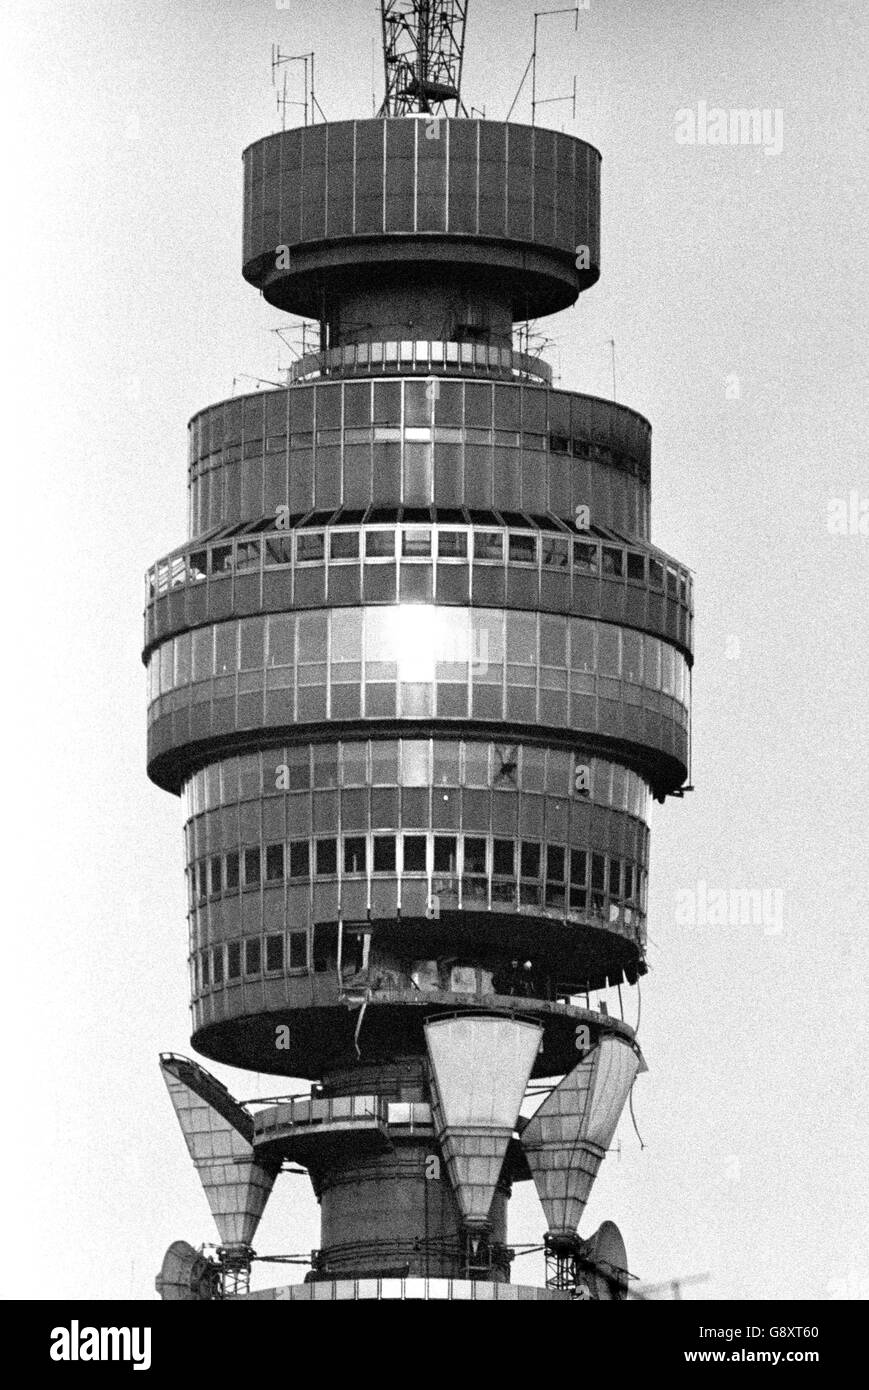 Fotografia che mostra la vicinanza del 32° piano danneggiato (in basso a destra) alla cima dell'edificio più alto della Gran Bretagna, la Torre dell'Ufficio postale, alta 620 metri, nel centro di Londra. *7/10/2005: La torre, che è una delle più famose attrazioni di Londra, celebra il suo 40° compleanno. Foto Stock